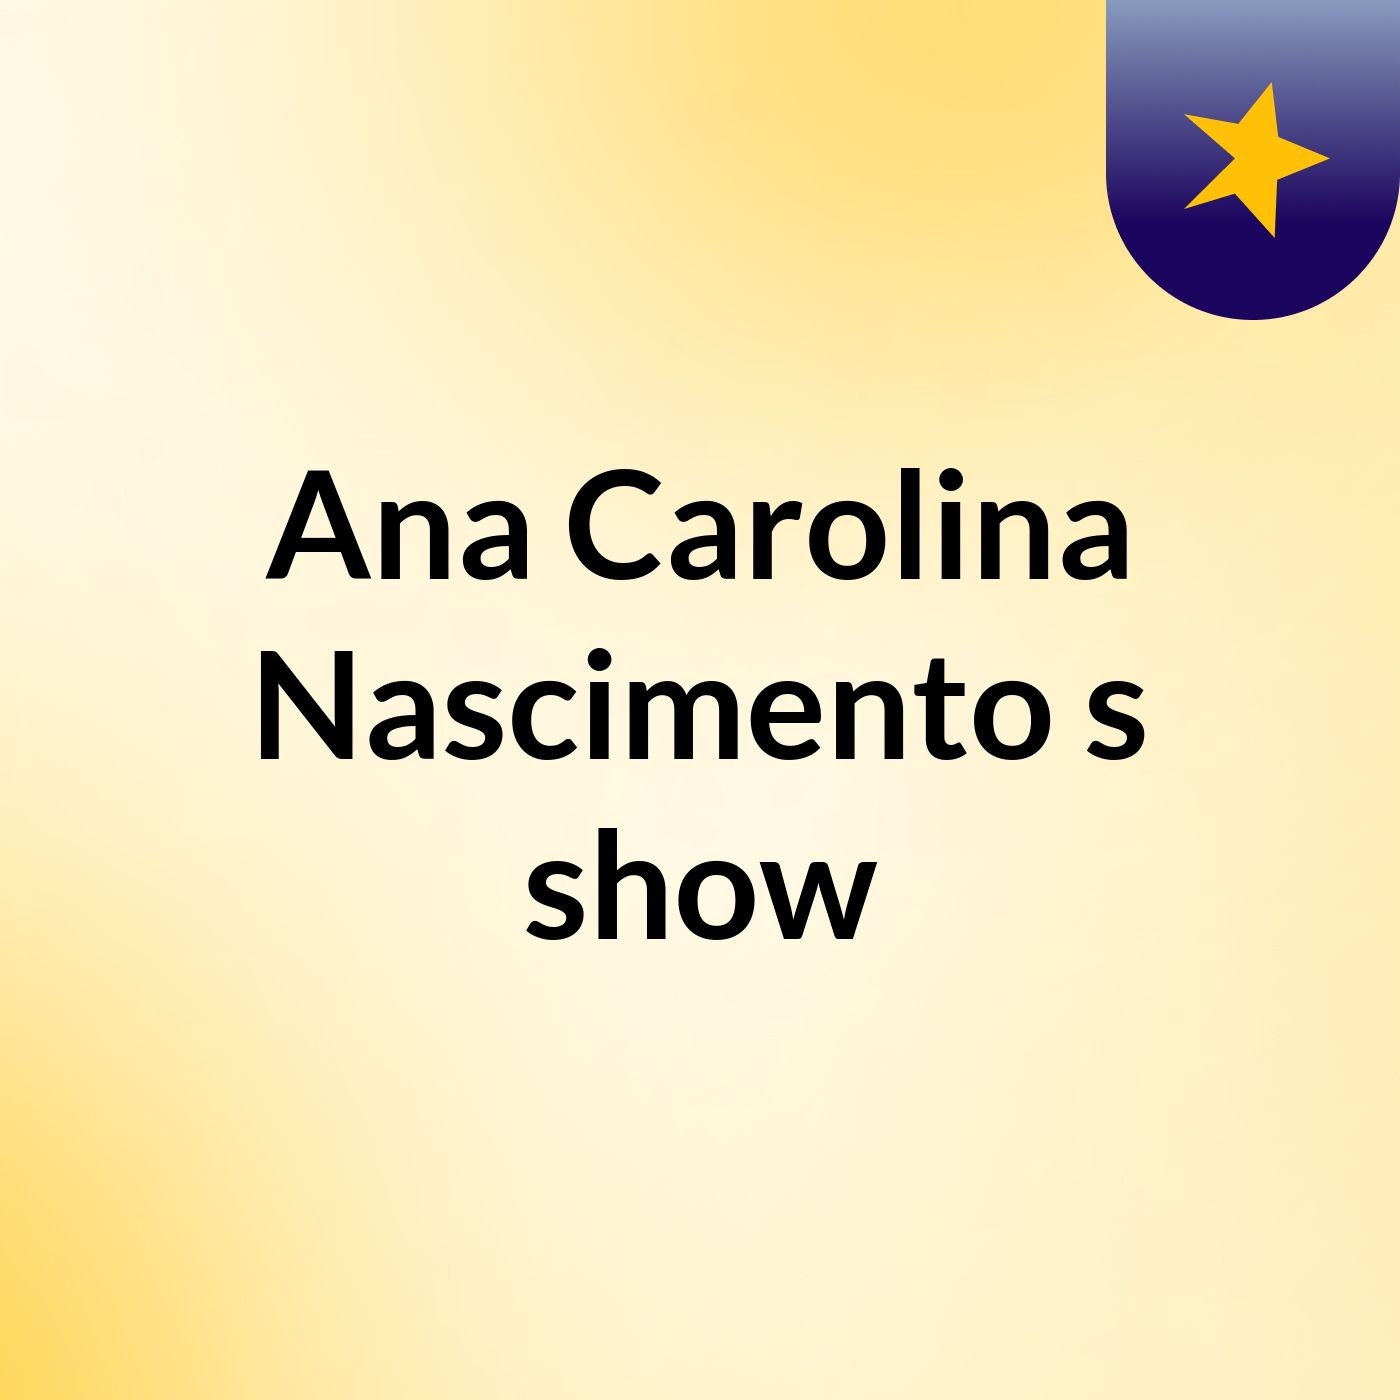 Ana Carolina Nascimento's show